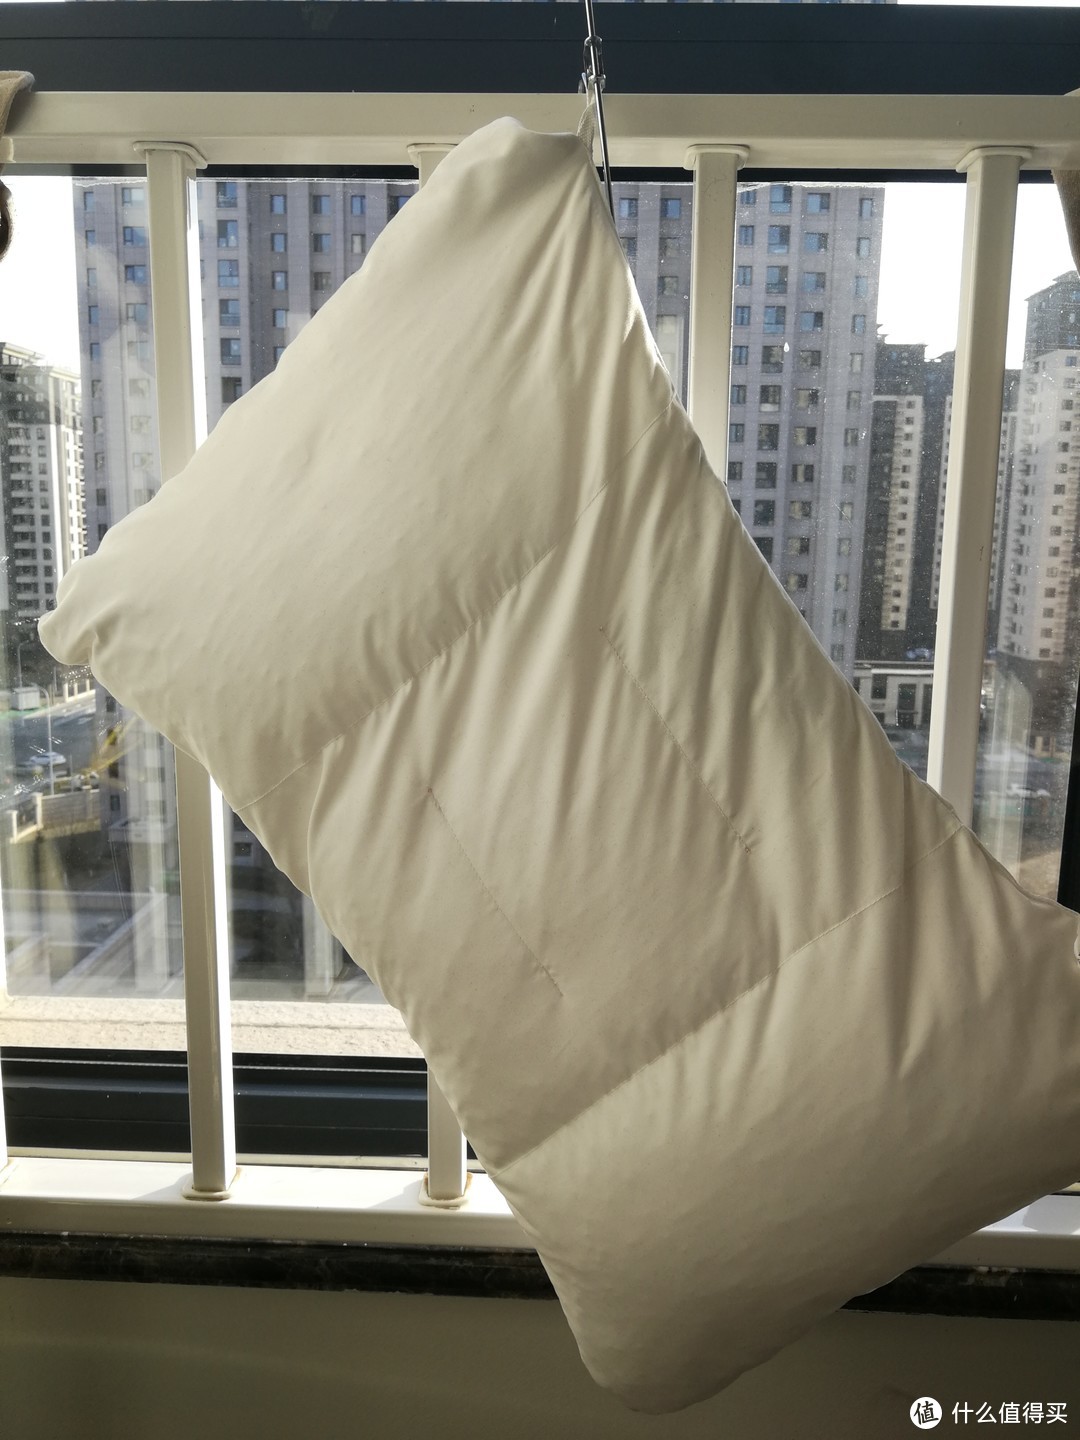 越用越离不开的枕头——菠萝斑马快眠枕测评